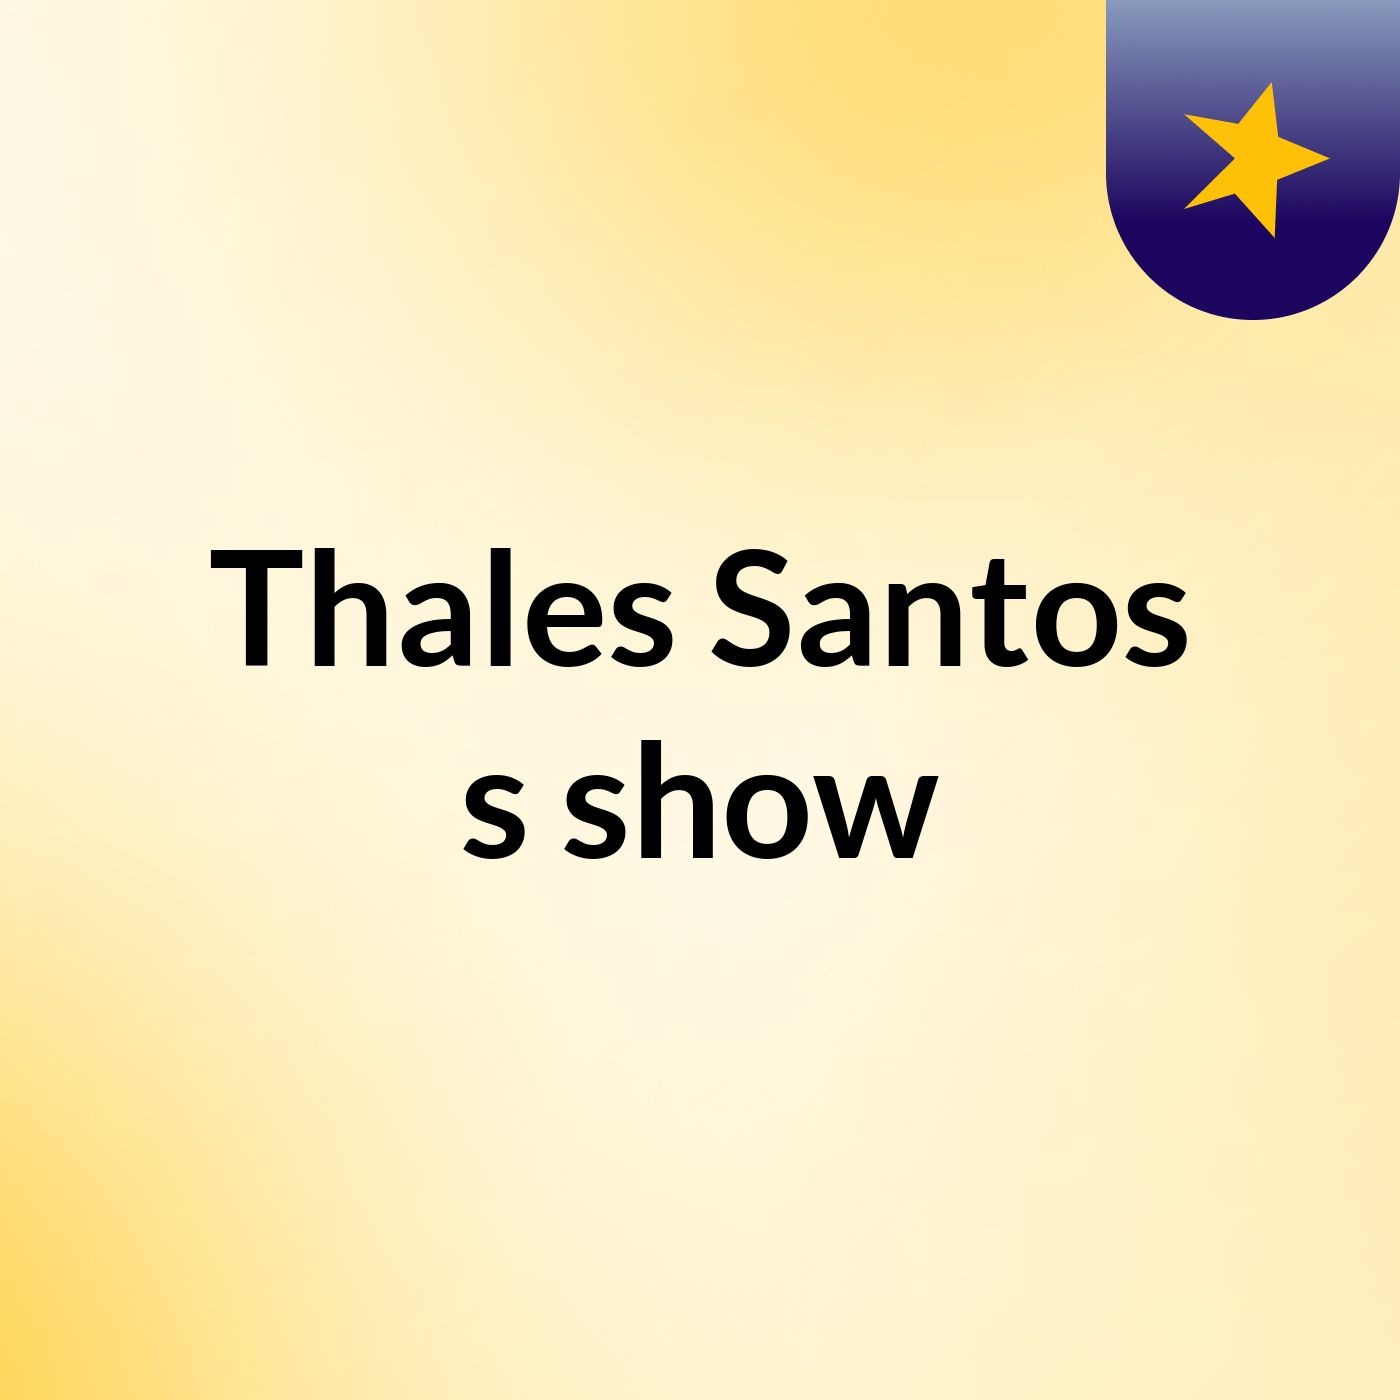 Thales Santos's show